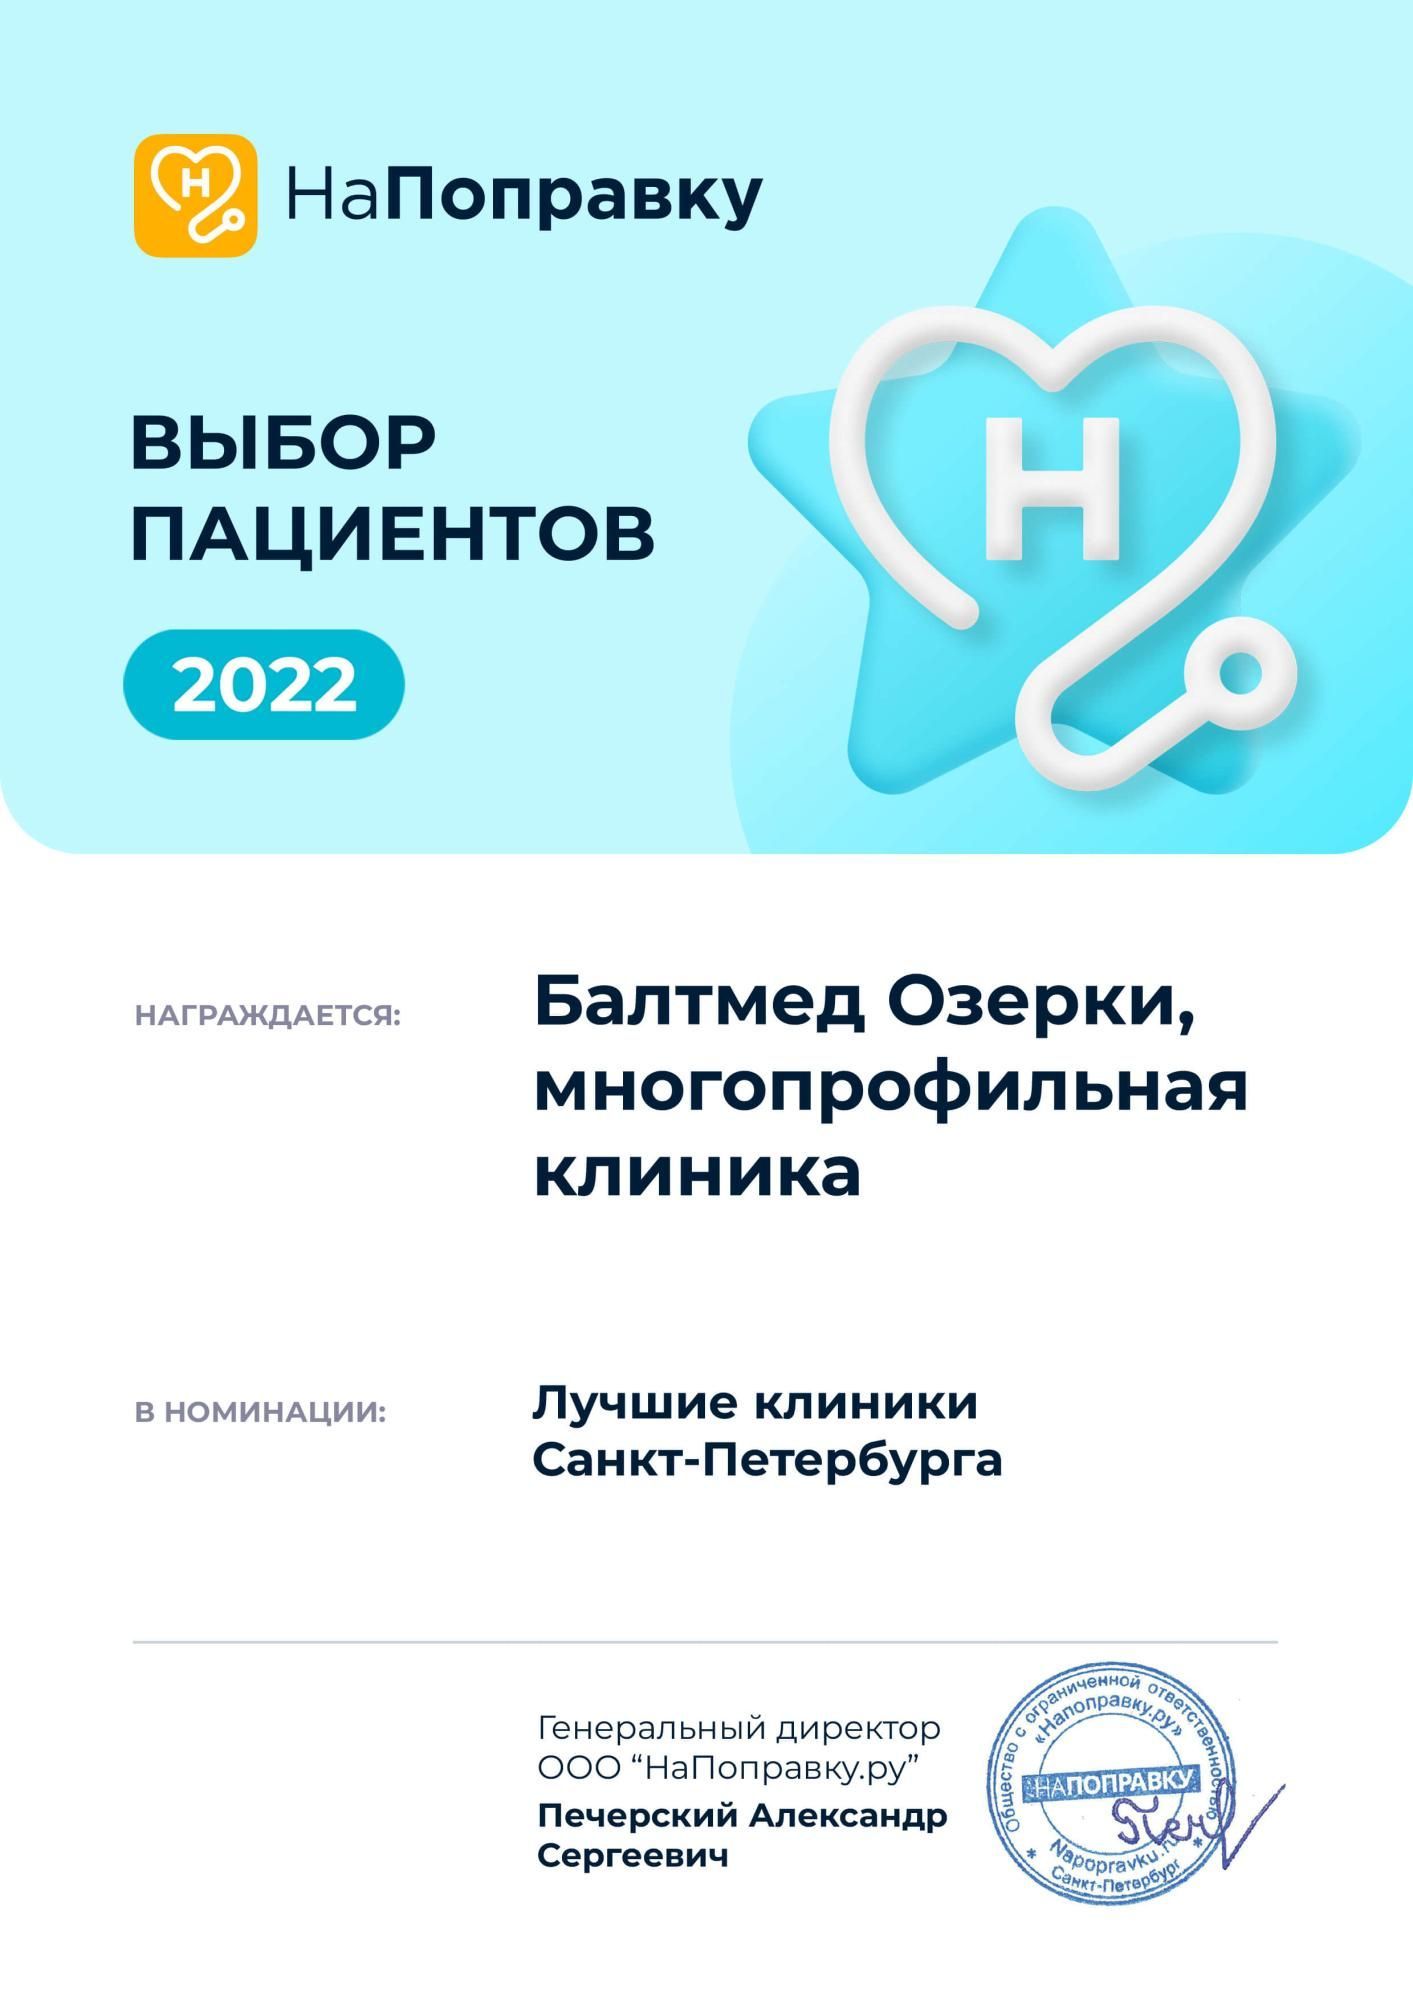 Победа в ежегодной премии «Выбор пациентов НаПоправку - 2022»